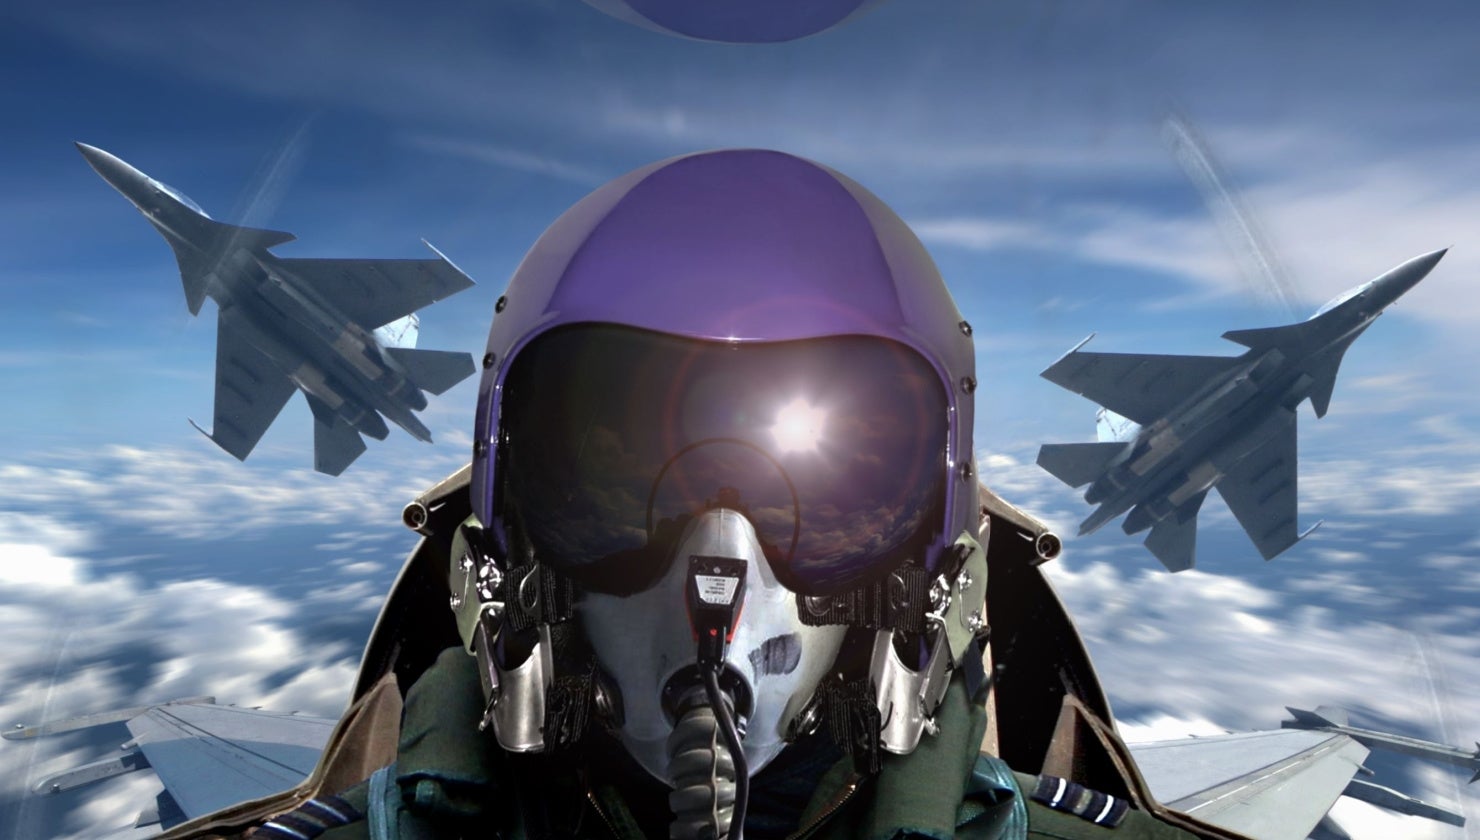 Fighter Jet Helmet Wallpapers - Wallpaper Cave